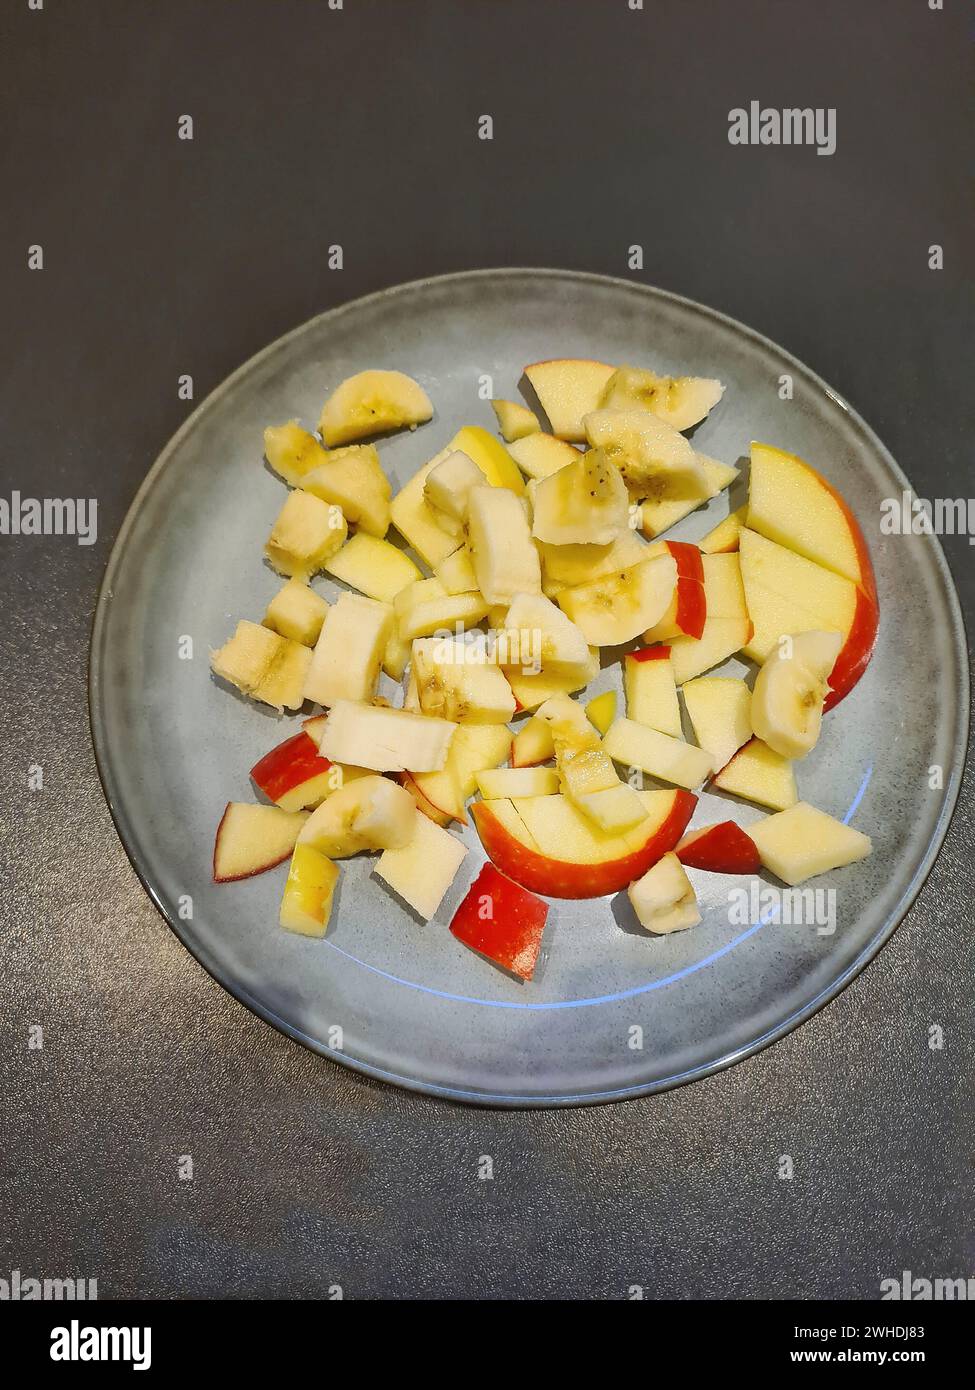 Pezzi di mela con buccia di mela rossa tagliati a pezzetti come Macedonia di frutta su un piatto azzurro Foto Stock